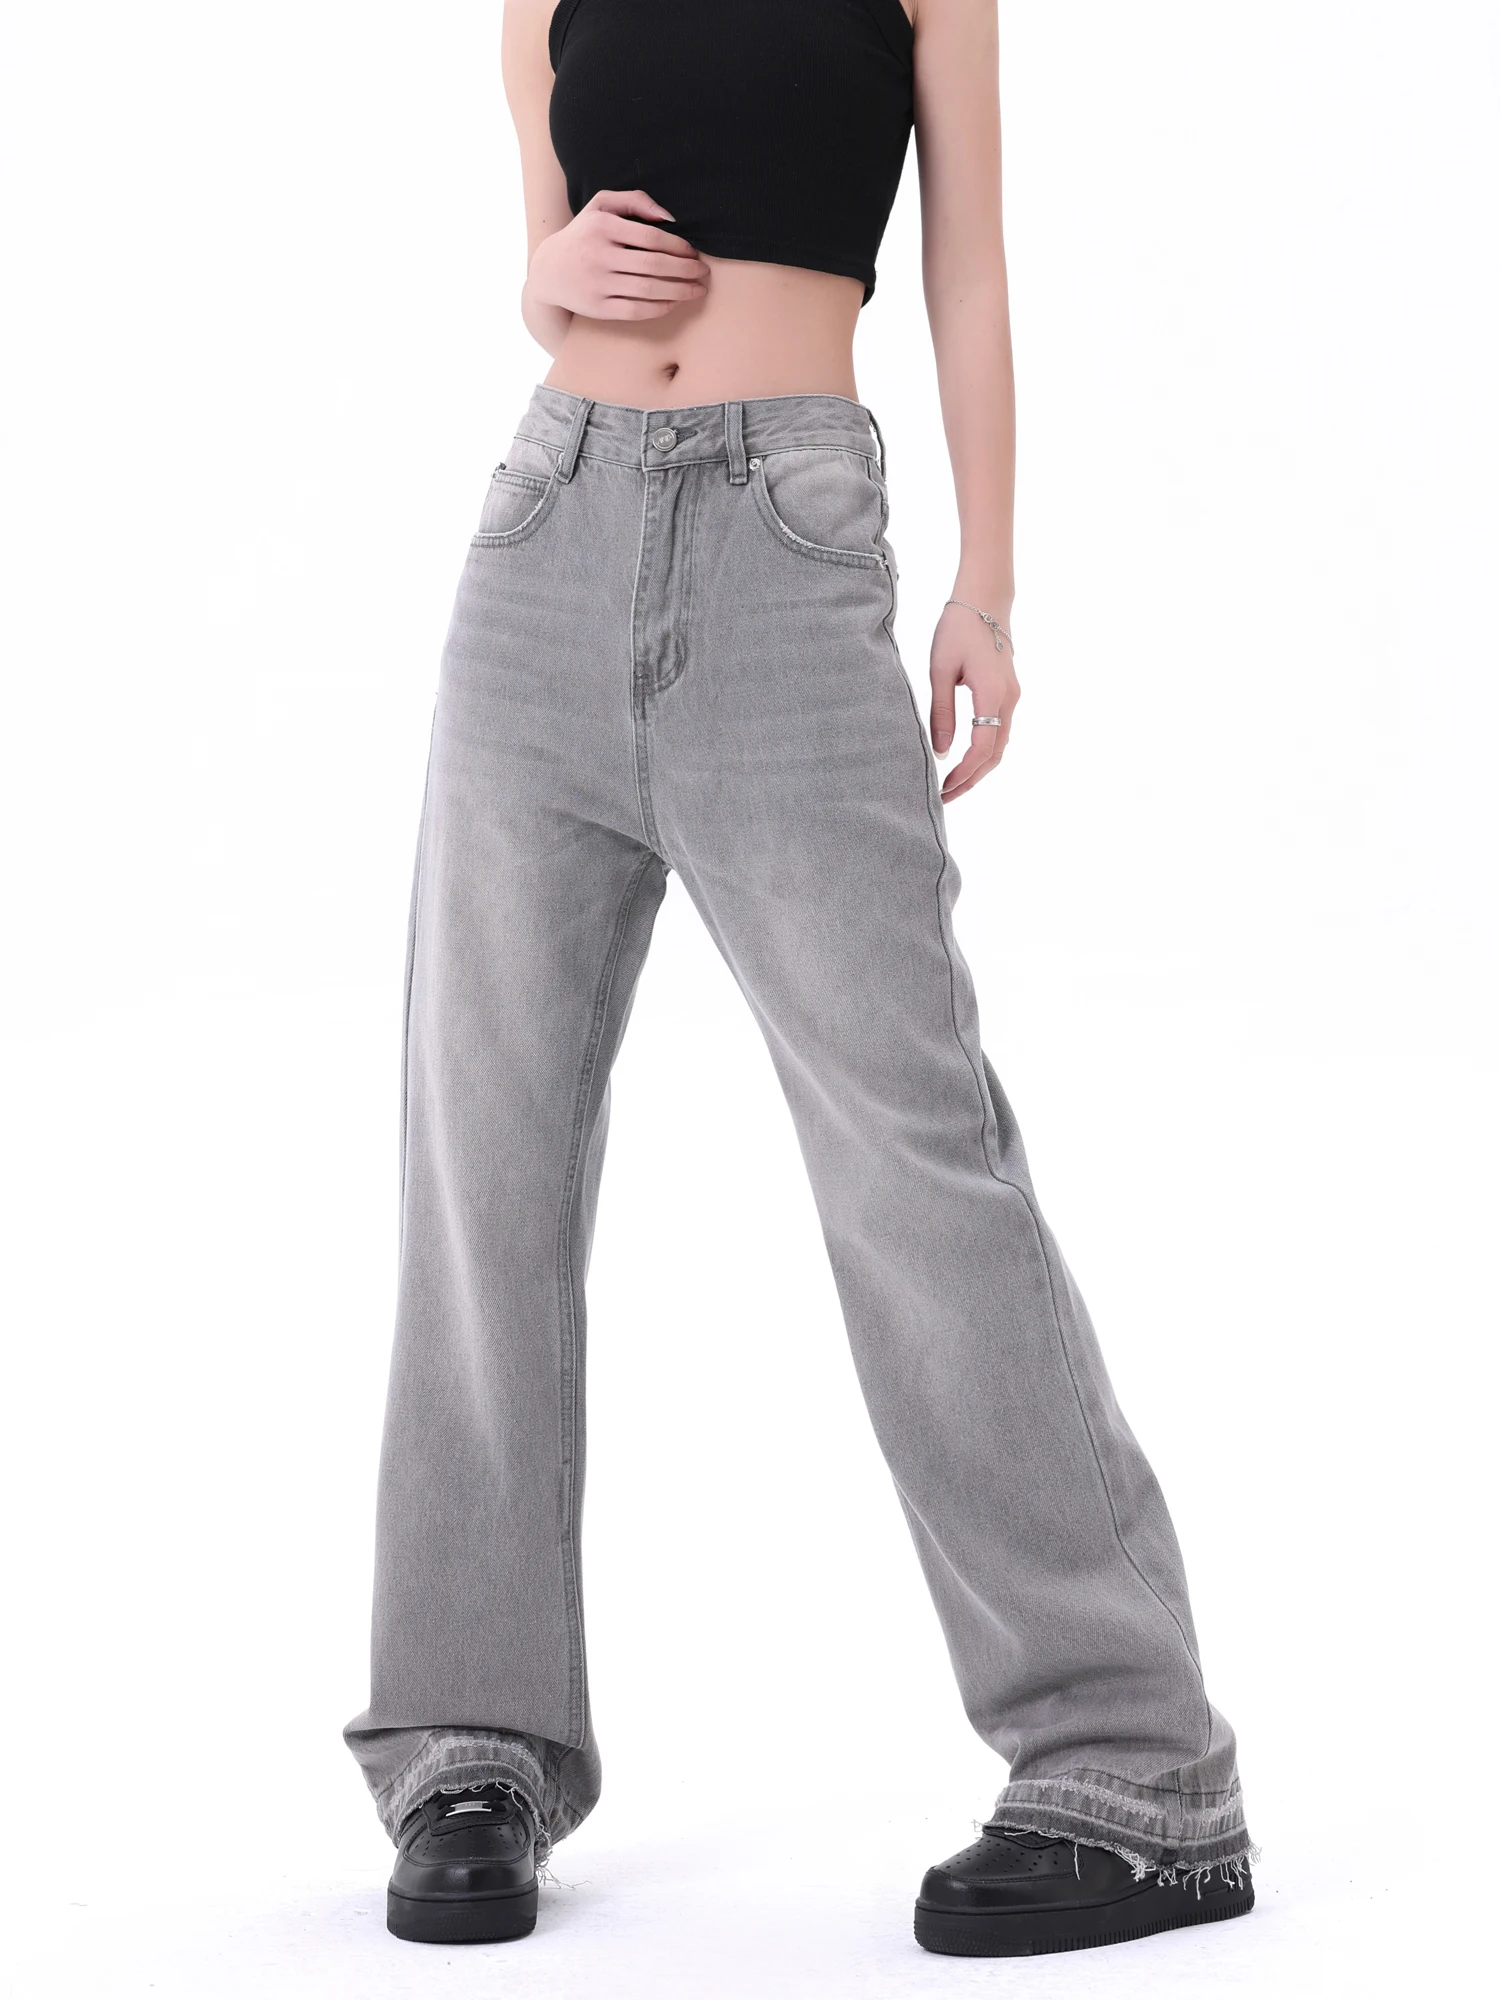 

Уличные ретро джинсы American high street дымчато-серого цвета для мужчин и женщин, свободные прямые брюки с эффектом потертости